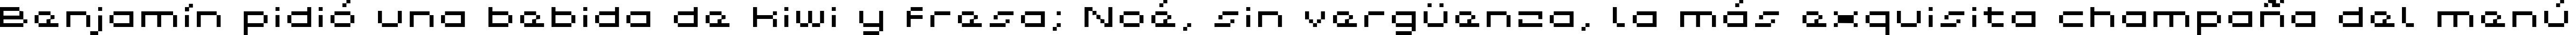 Пример написания шрифтом Grixel Kyrou 5 Wide Xtnd текста на испанском